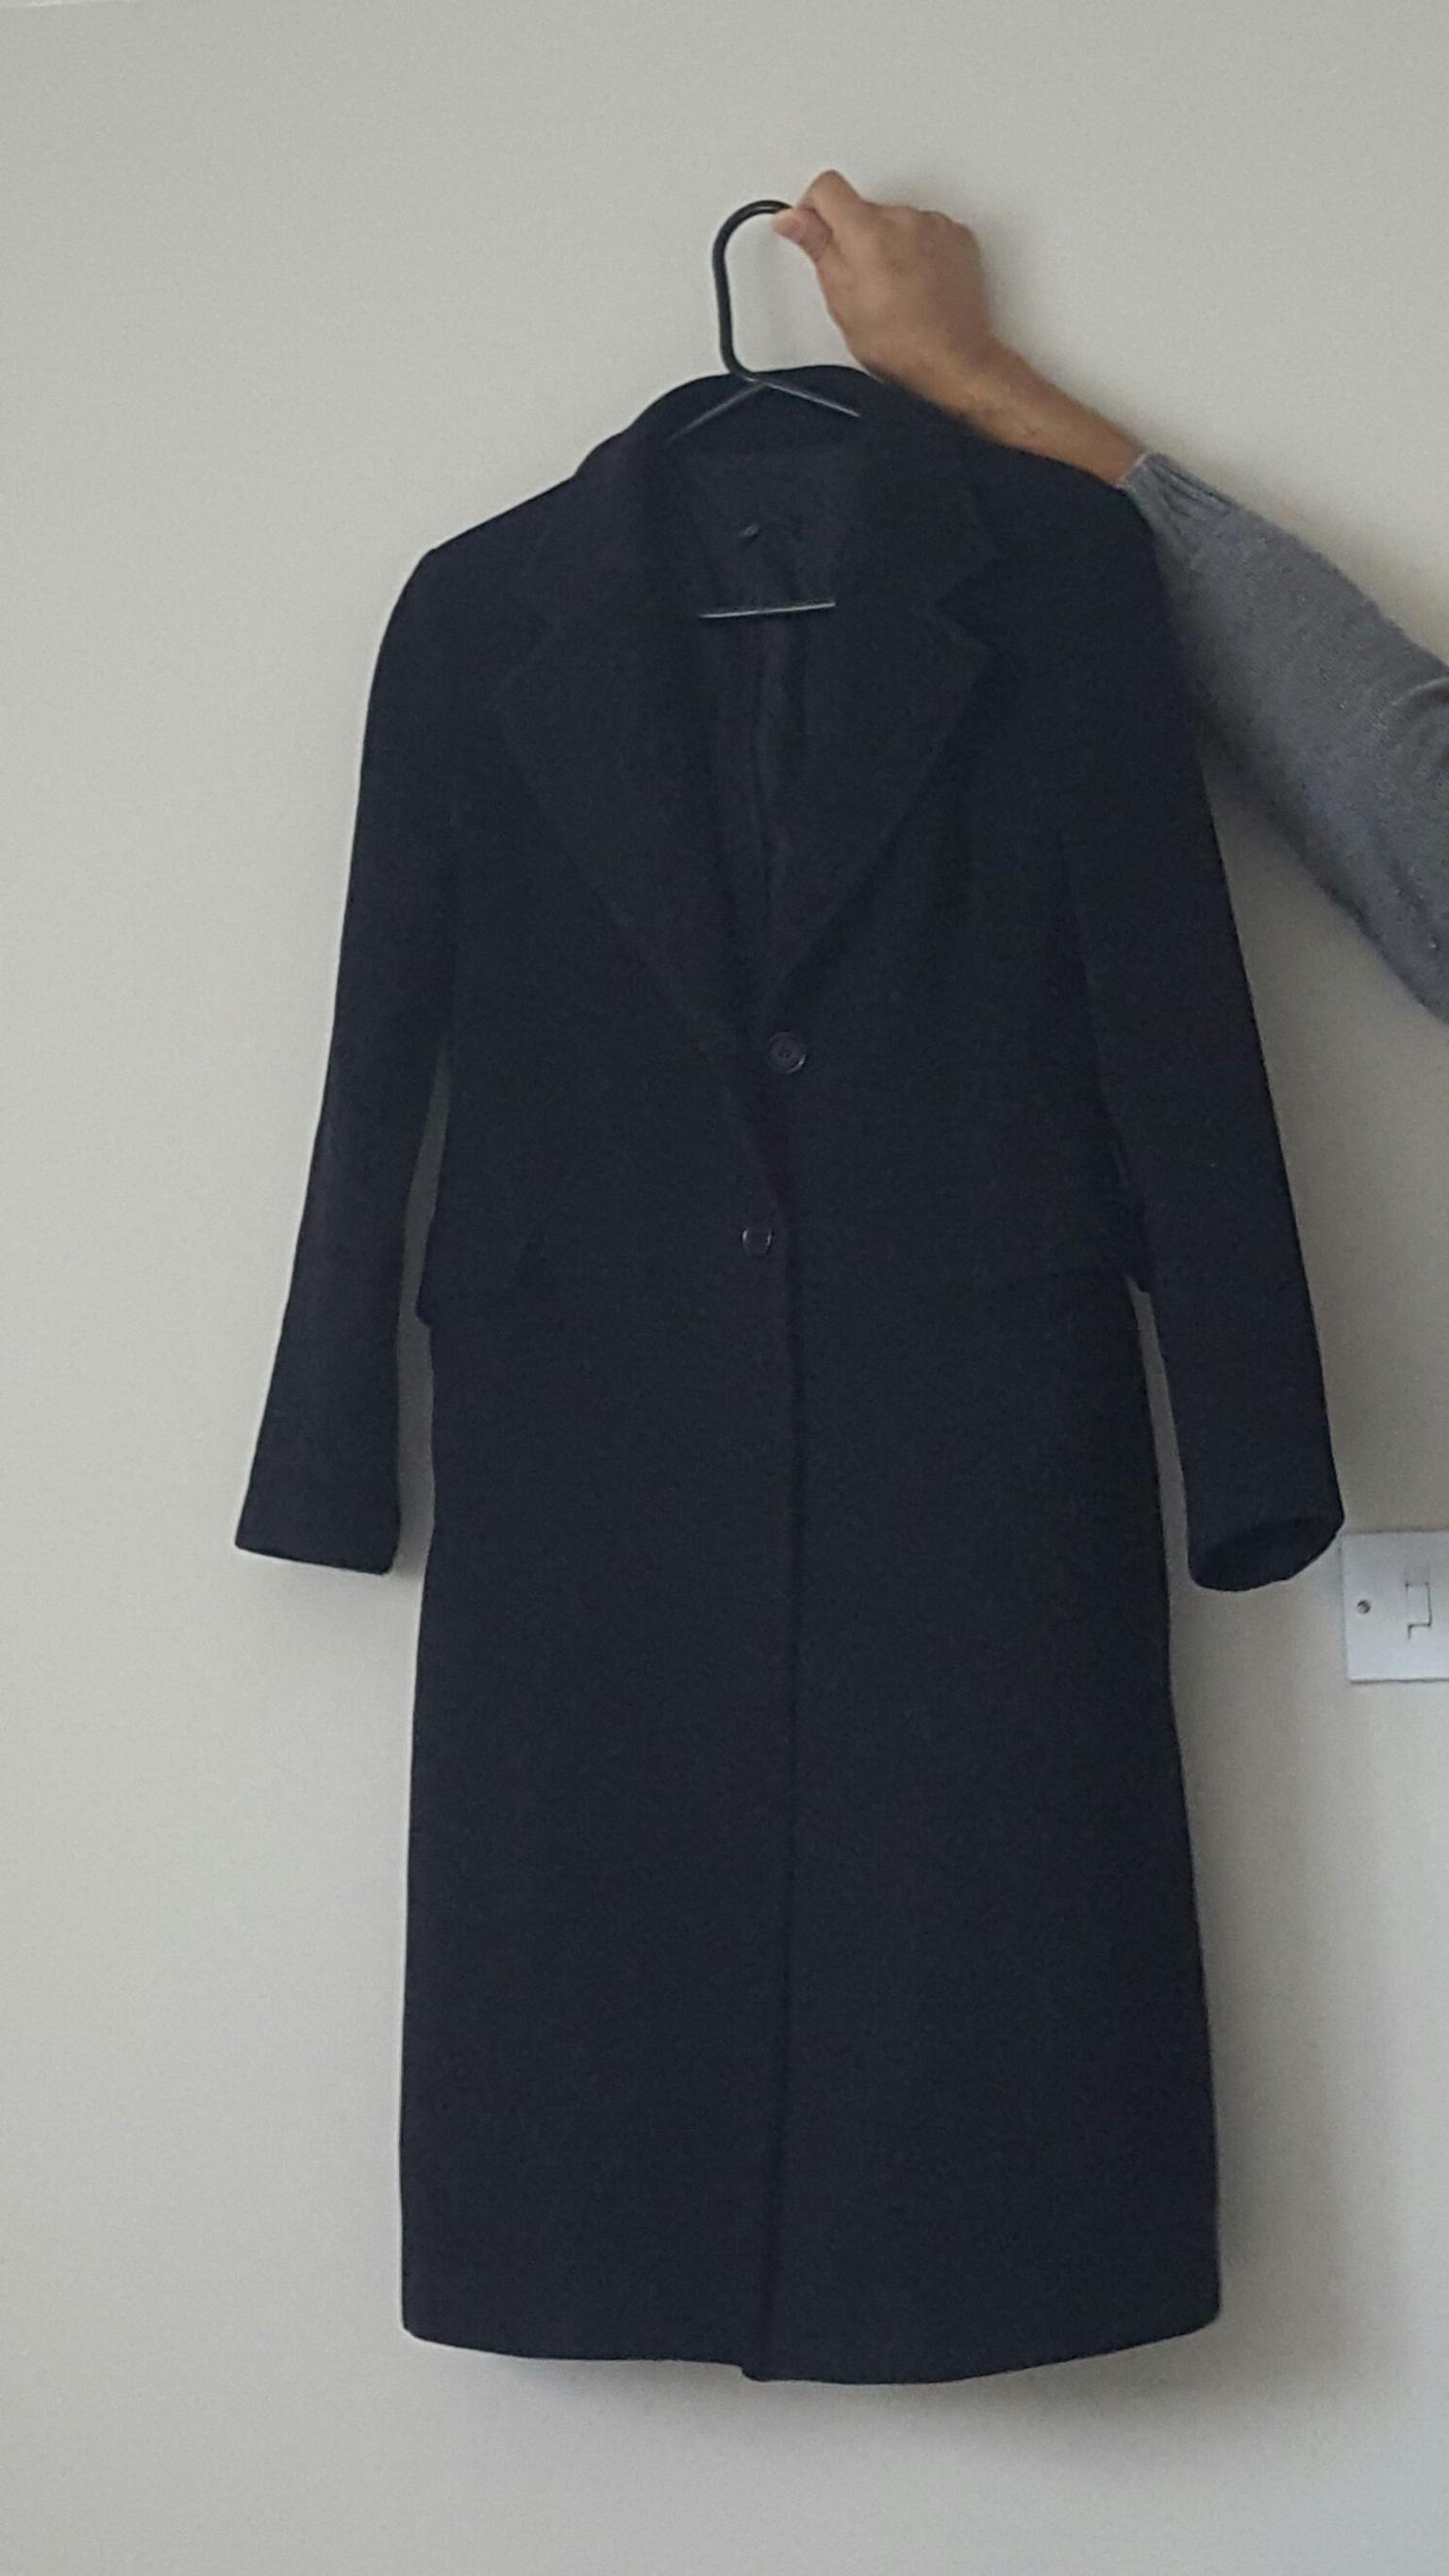 zara black women's coat